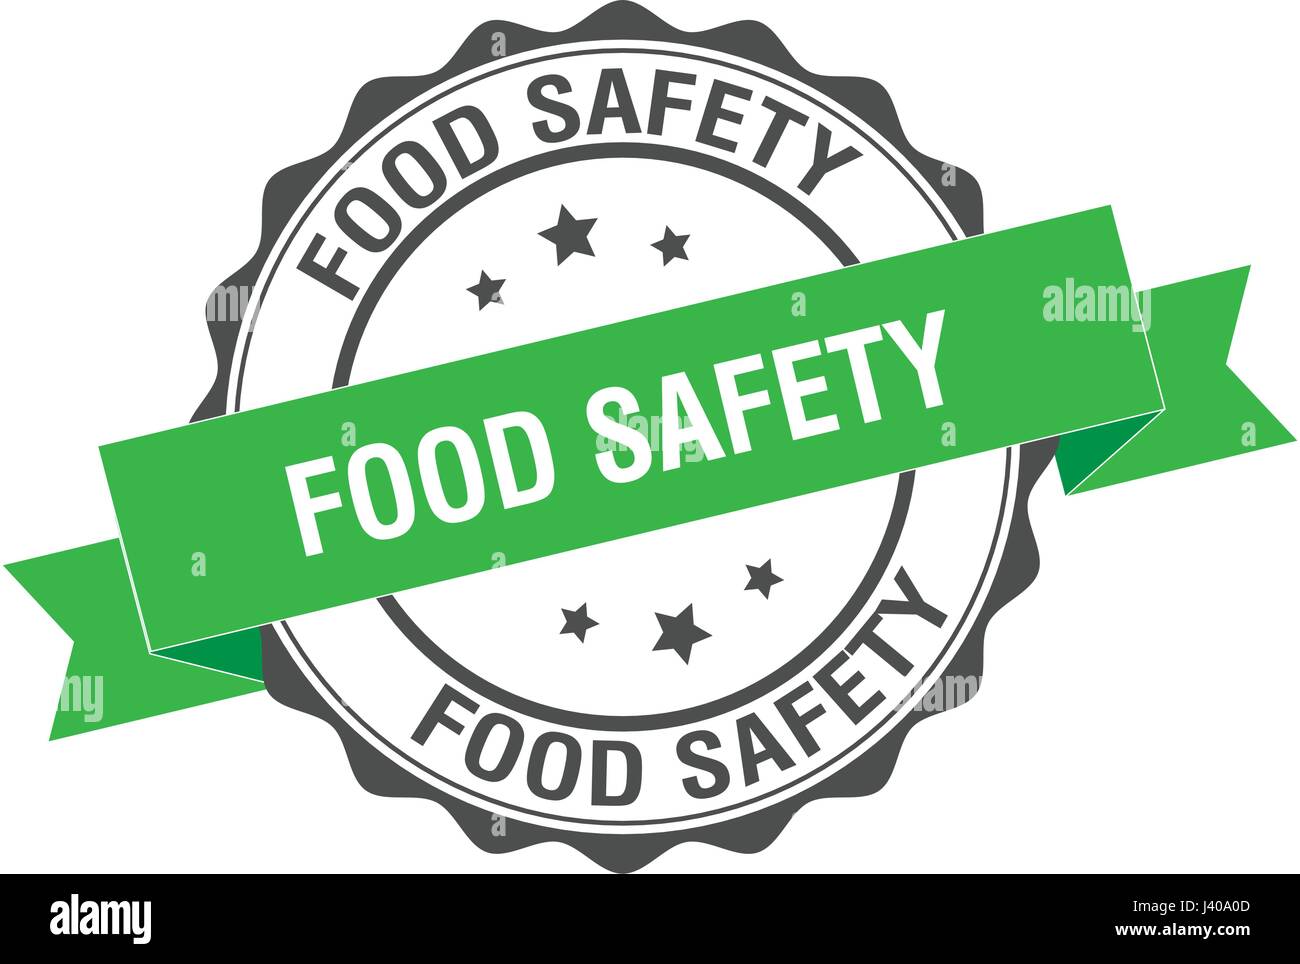 Ilustración de sello de seguridad alimentaria Ilustración del Vector